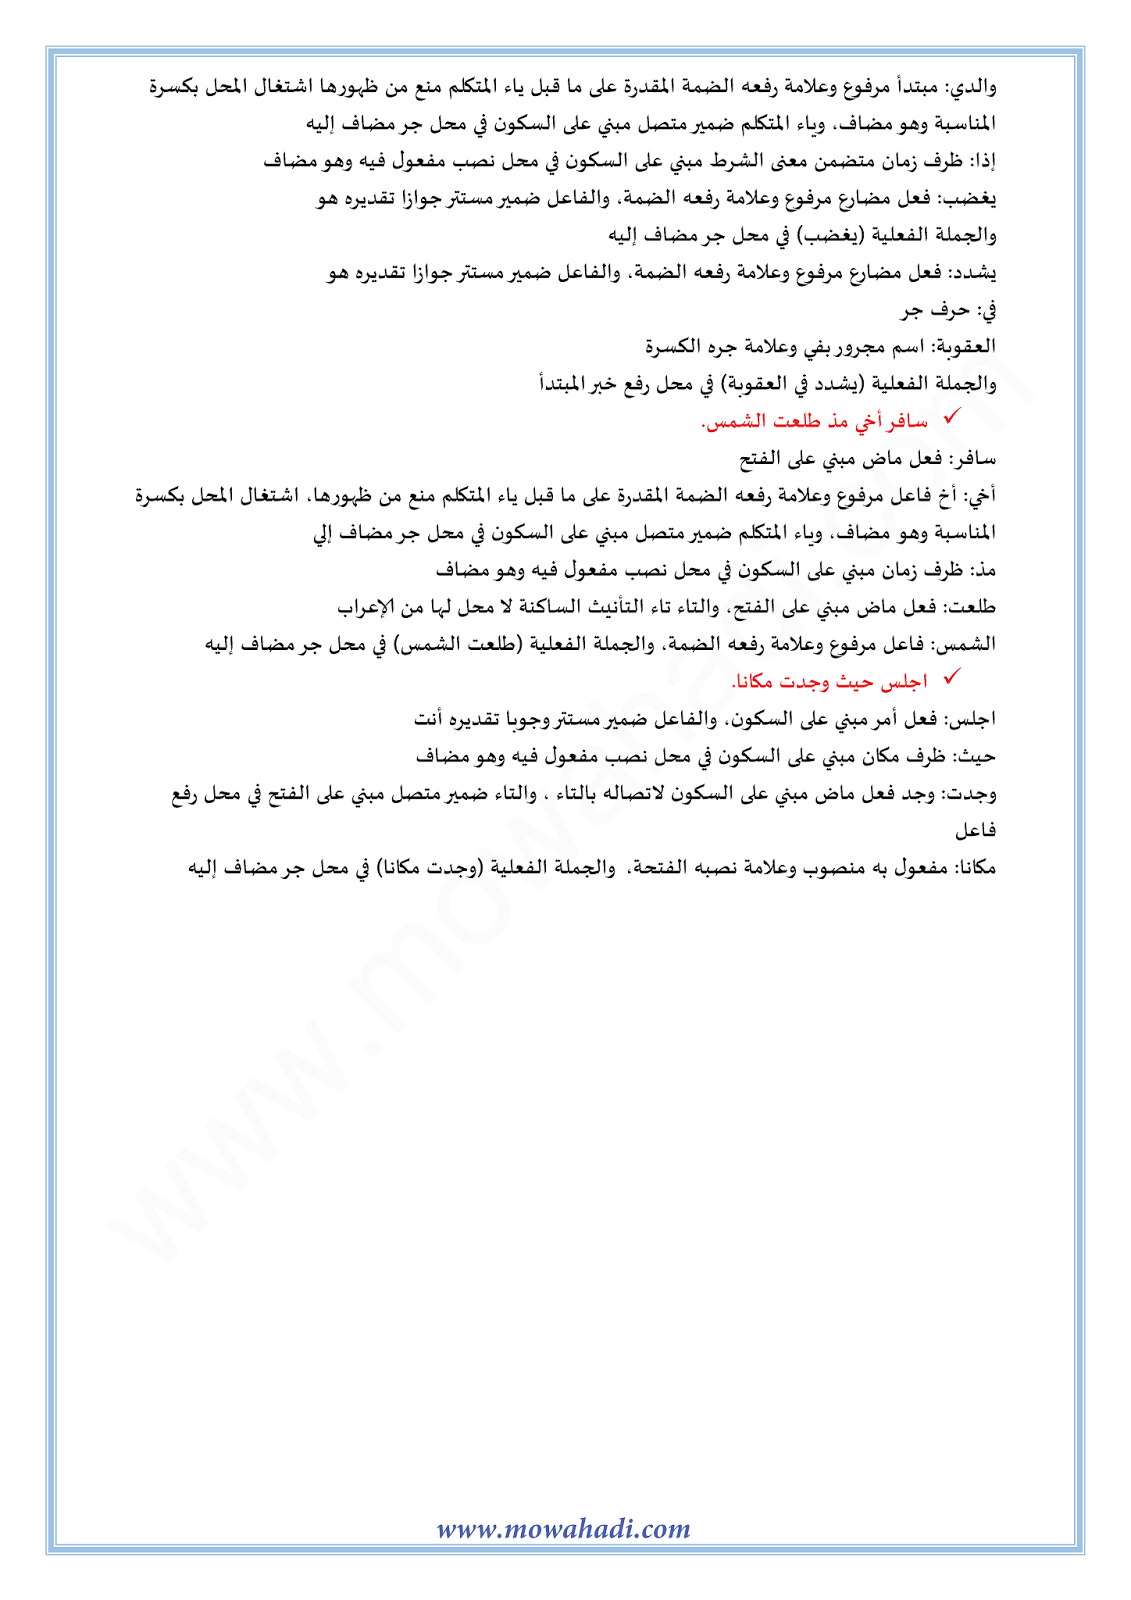 الدرس اللغوي الإضافة للسنة الثالثة اعدادي في مادة اللغة العربية 6-cours-dars-loghawi3_005